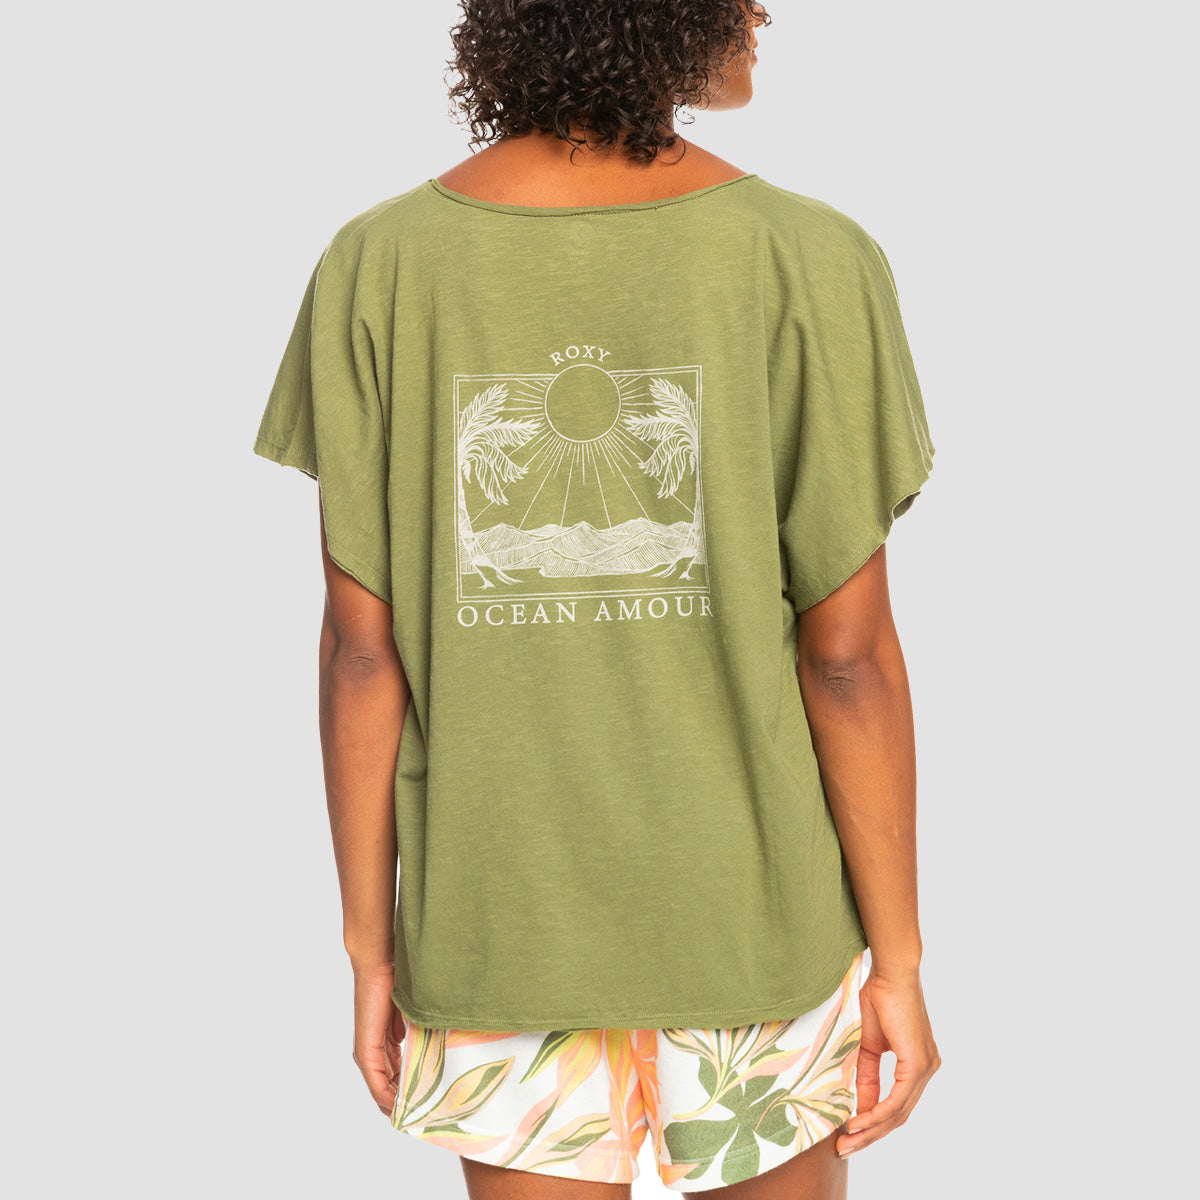 Roxy Twilight Green T-Shirt - Loden Womens